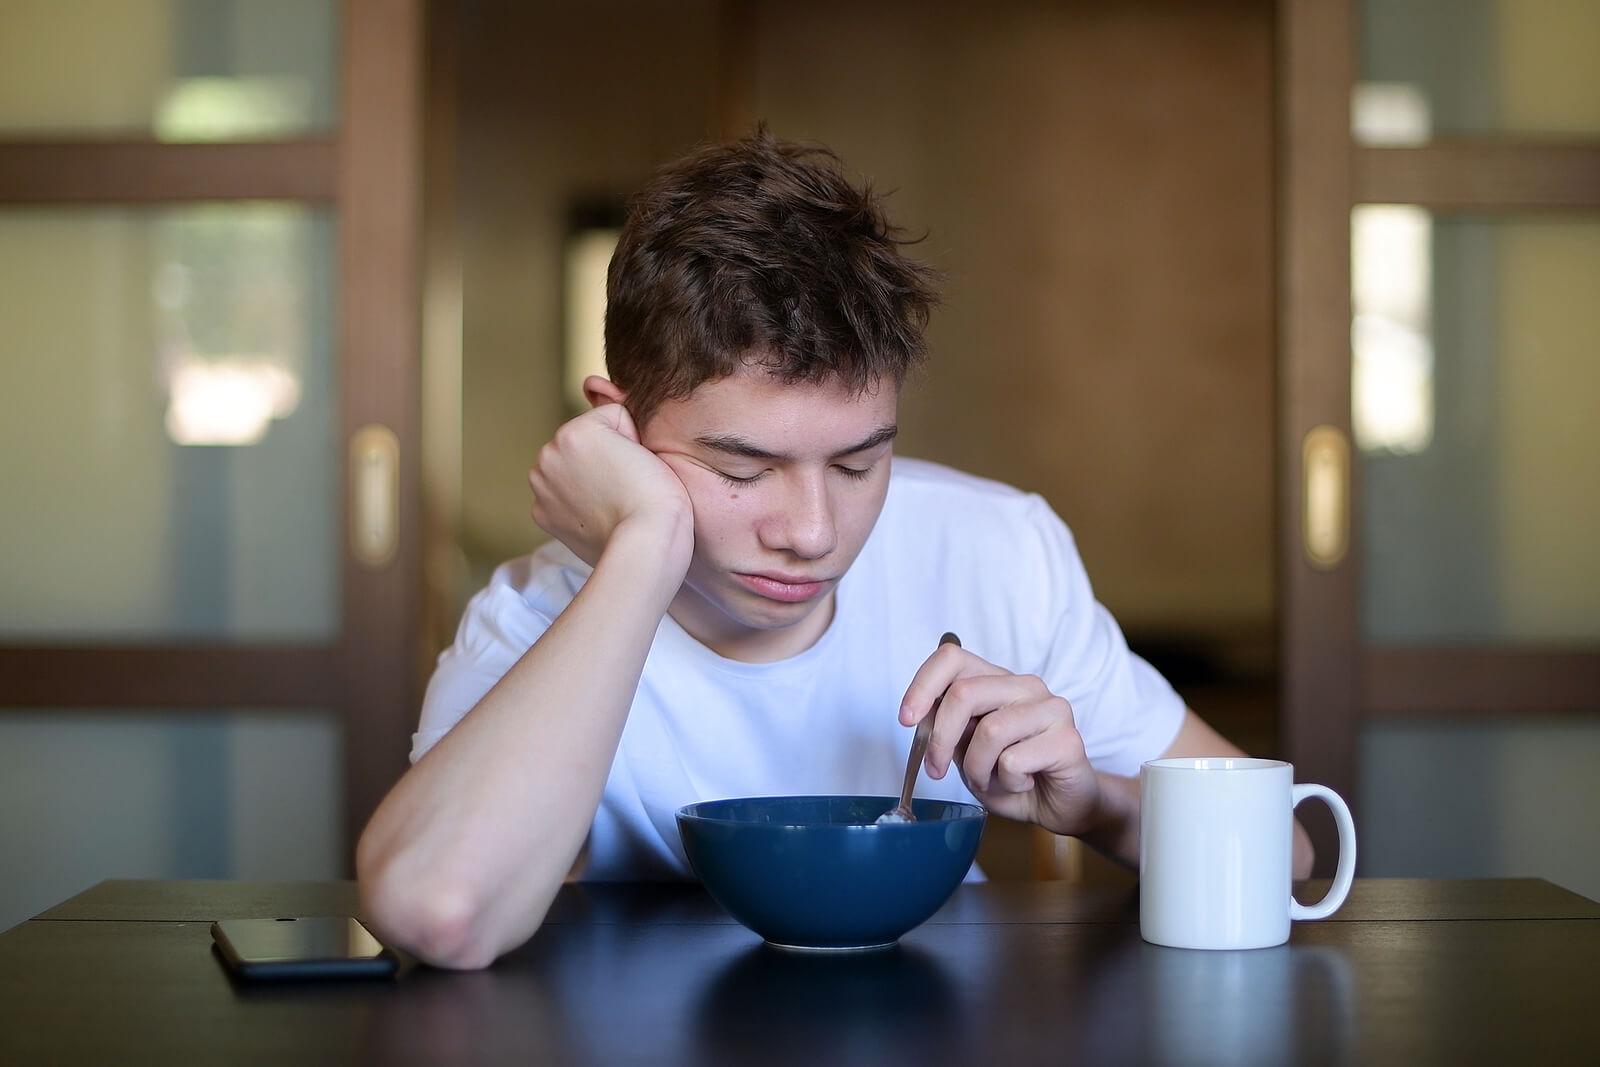 Saltarse el desayuno en la adolescencia es algo normal por falte de tiempo o apetito.